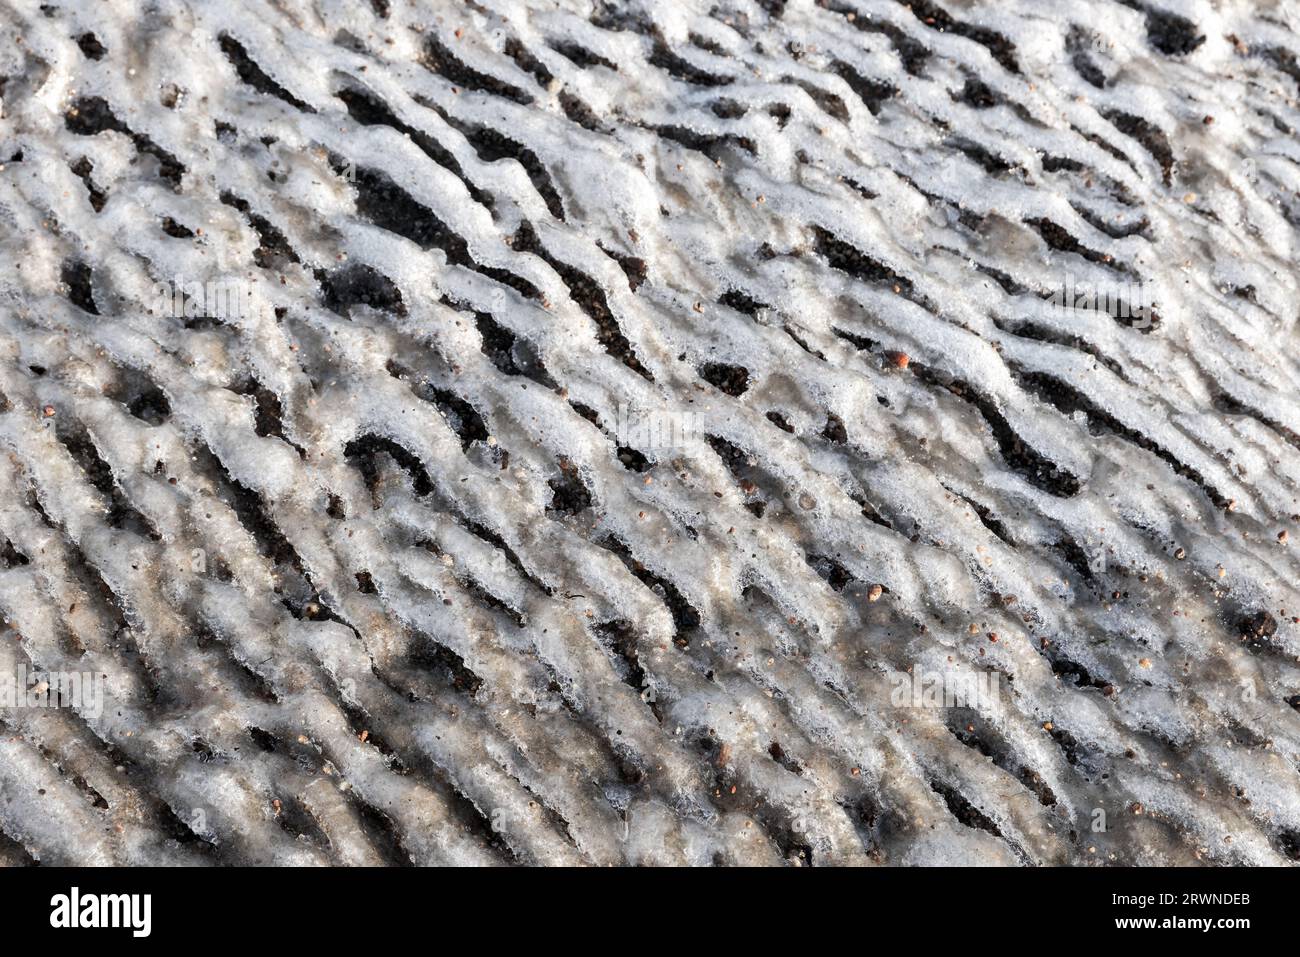 Modello ondulato astratto di ghiaccio costiero fuso con sabbia. Foto di sfondo naturale Foto Stock